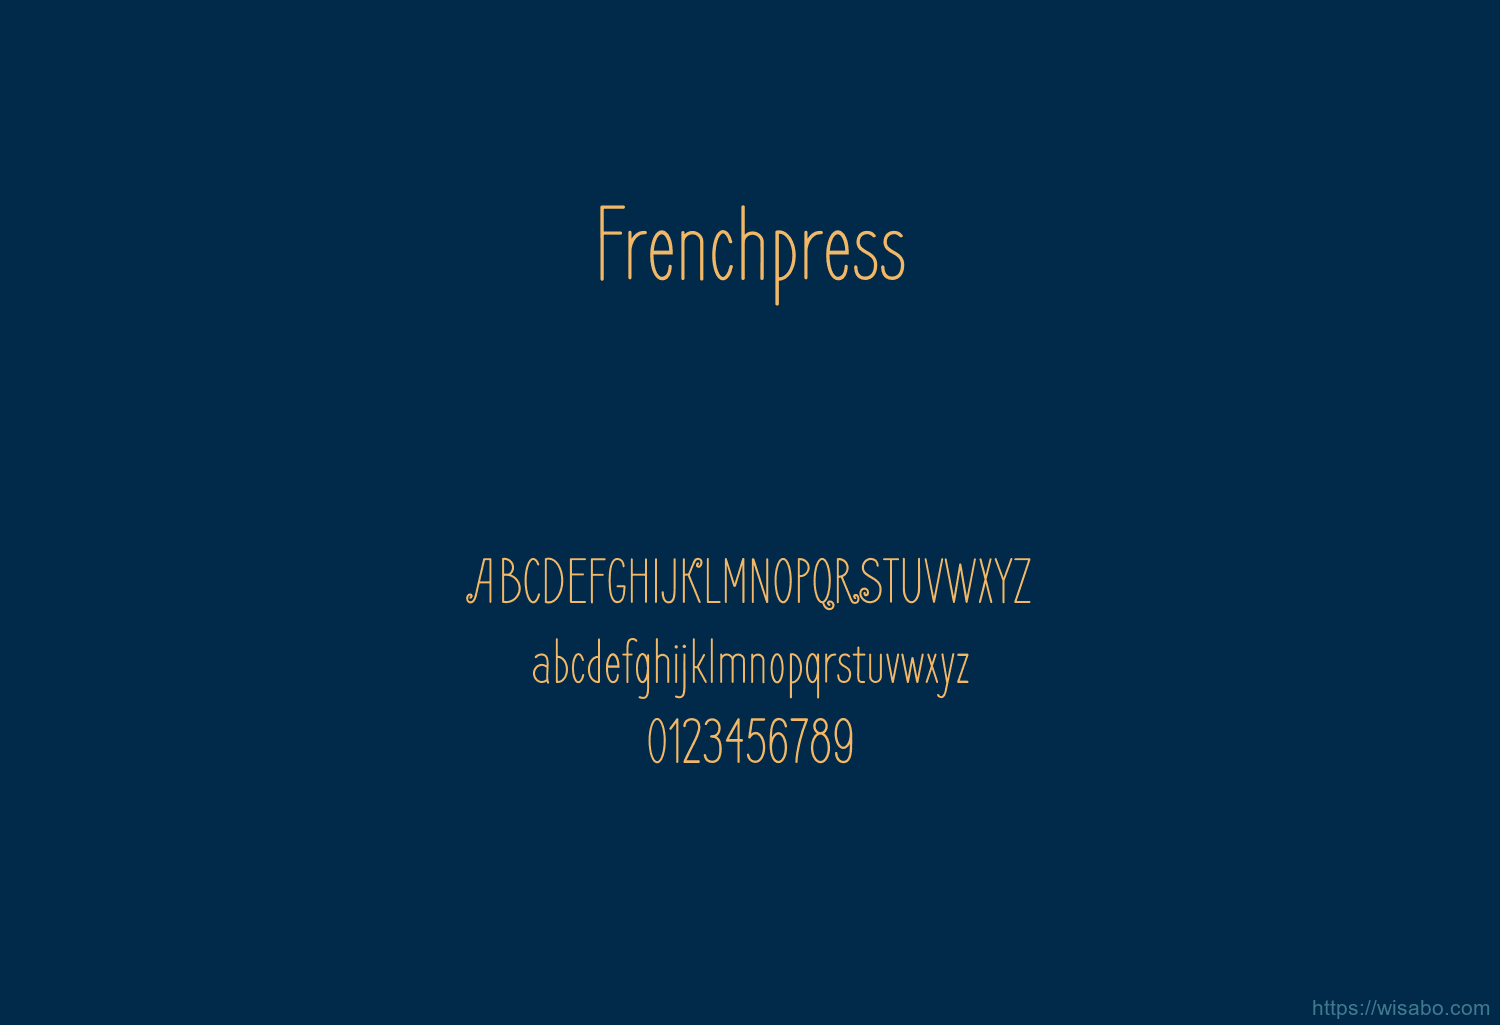 Frenchpress